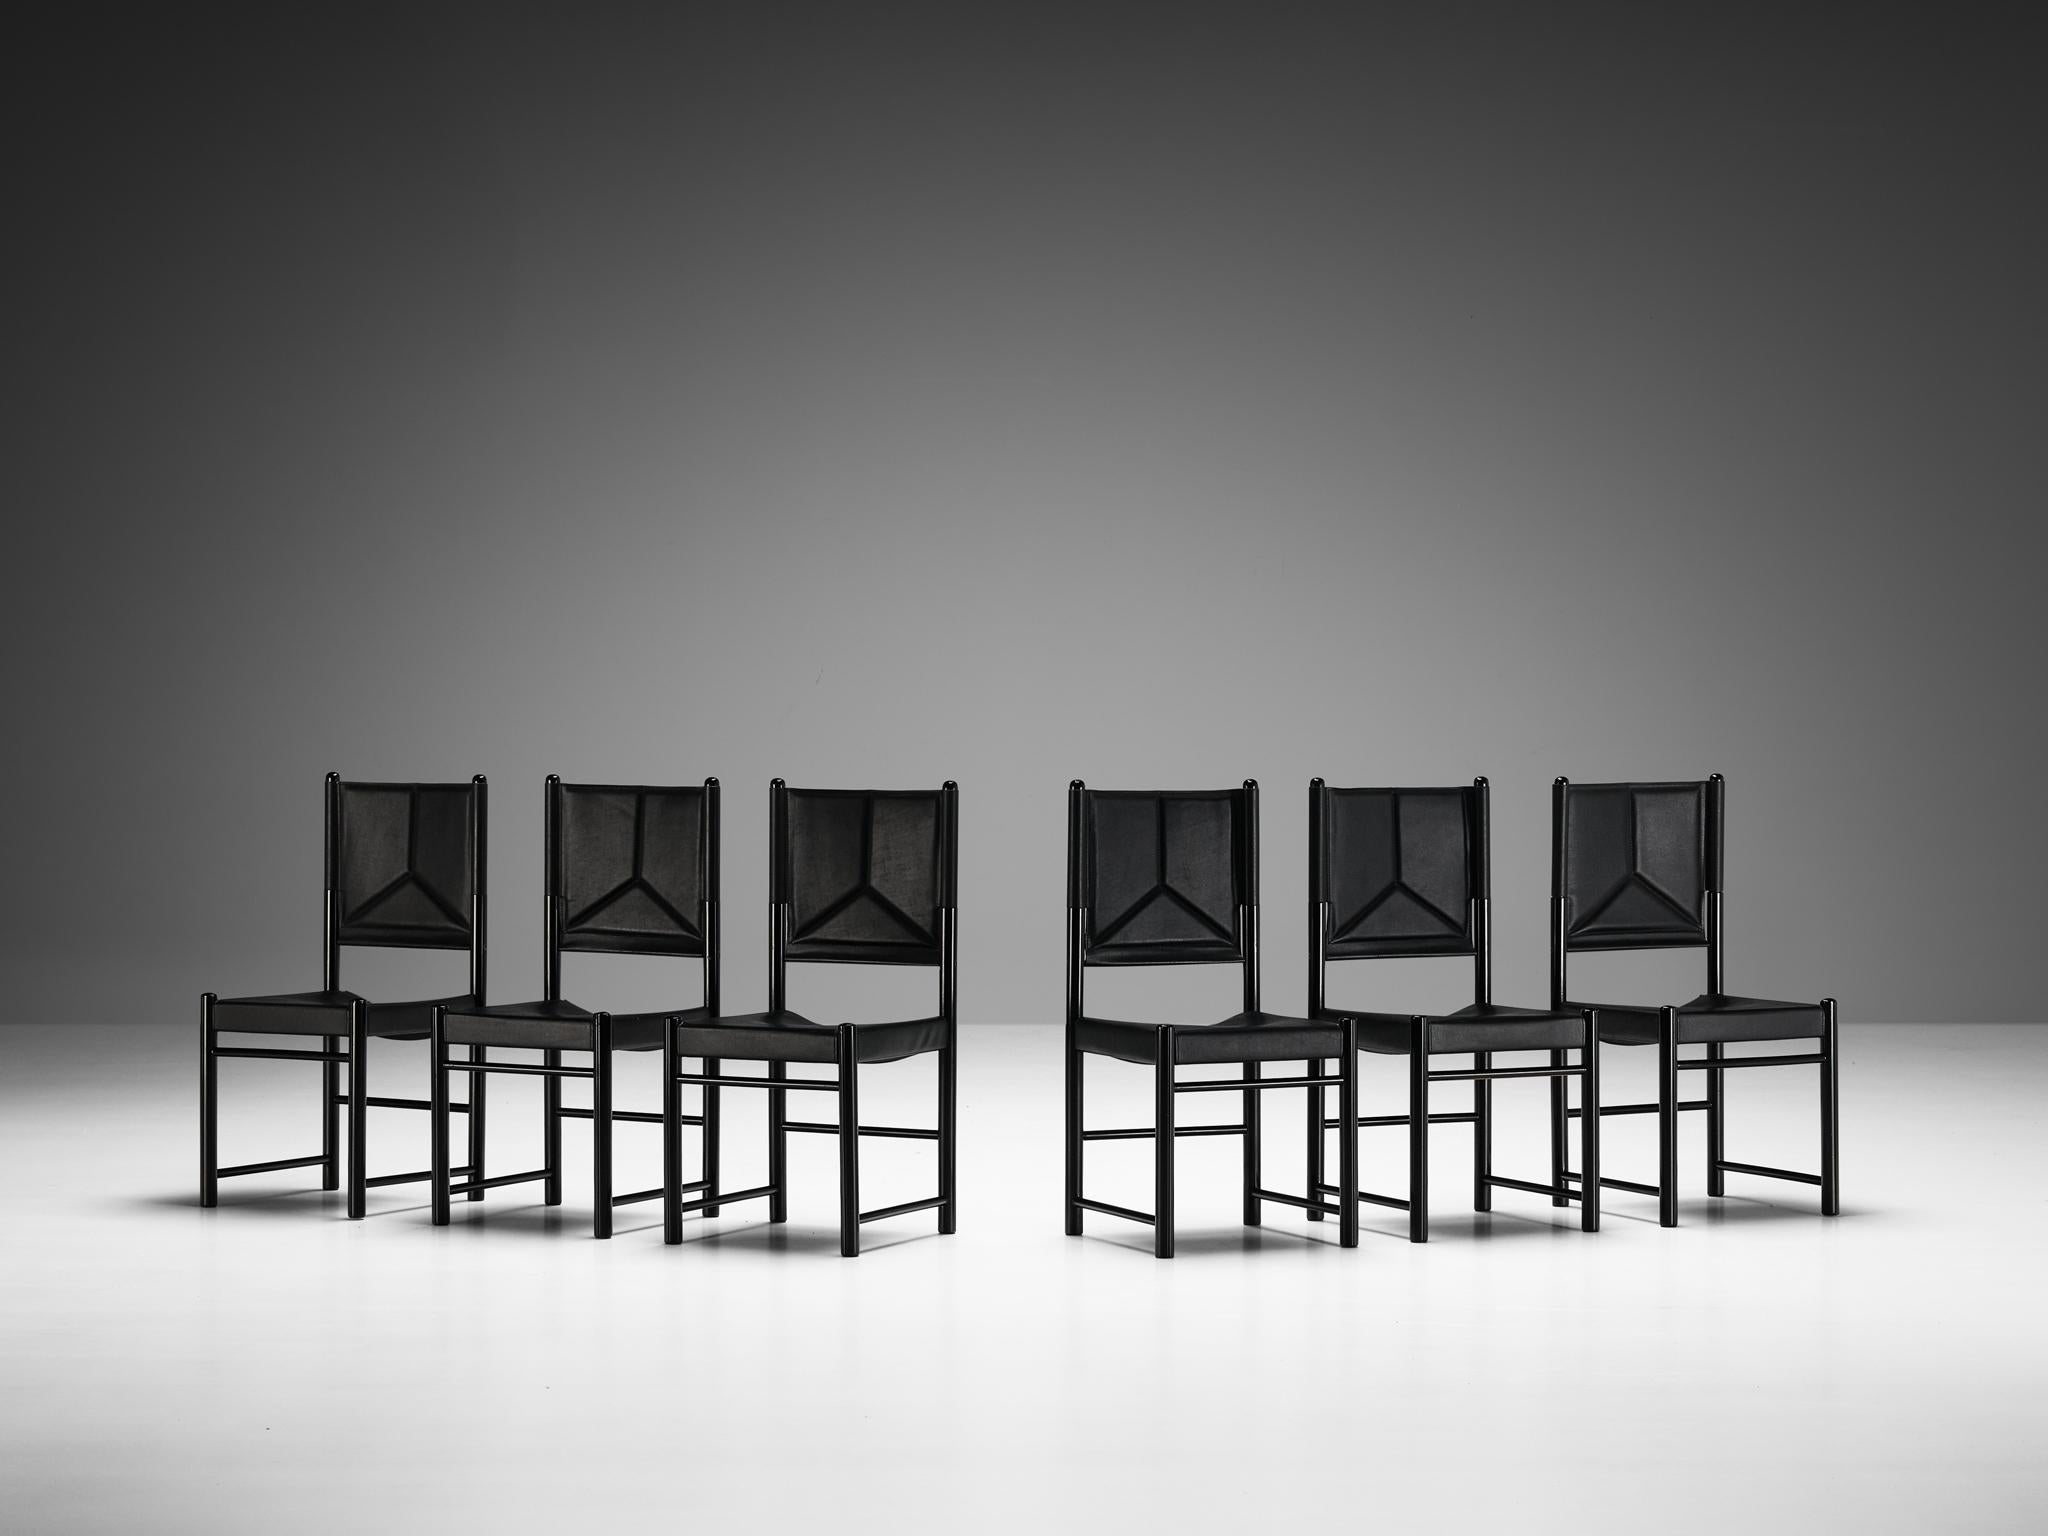 Satz von sechs Esszimmerstühlen, lackiertes Holz, Kunstleder, Italien, 1970er Jahre

Ein zartes Set von Stühlen, die gut proportioniert sind und den Essbereich auf eine kraftvolle und starke Weise aufwerten. Der Holzrahmen besteht aus zylindrischen